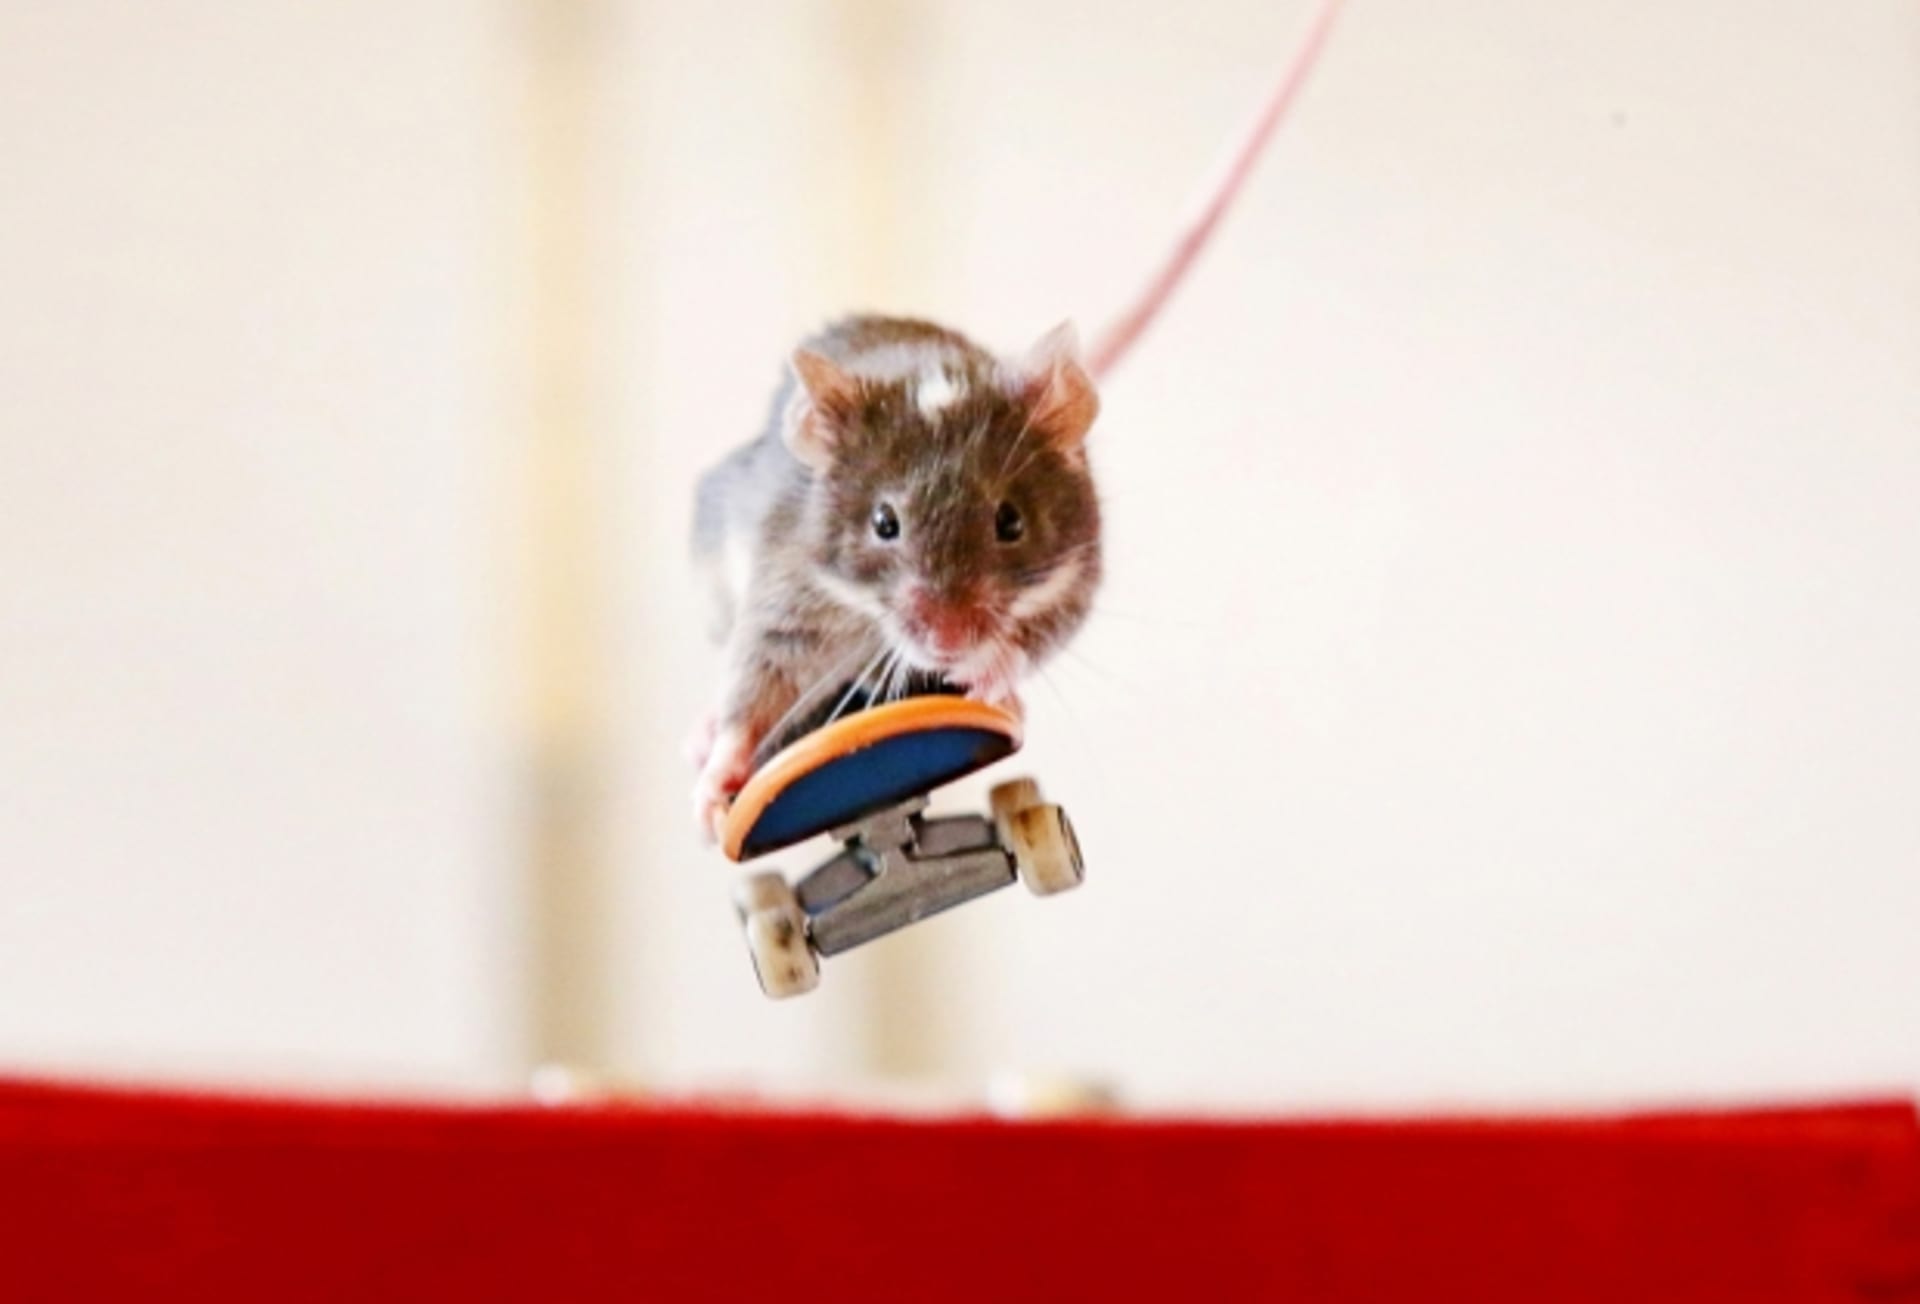 V Austrálii si to sviští myši na skateboardu... to koukáte, co?!